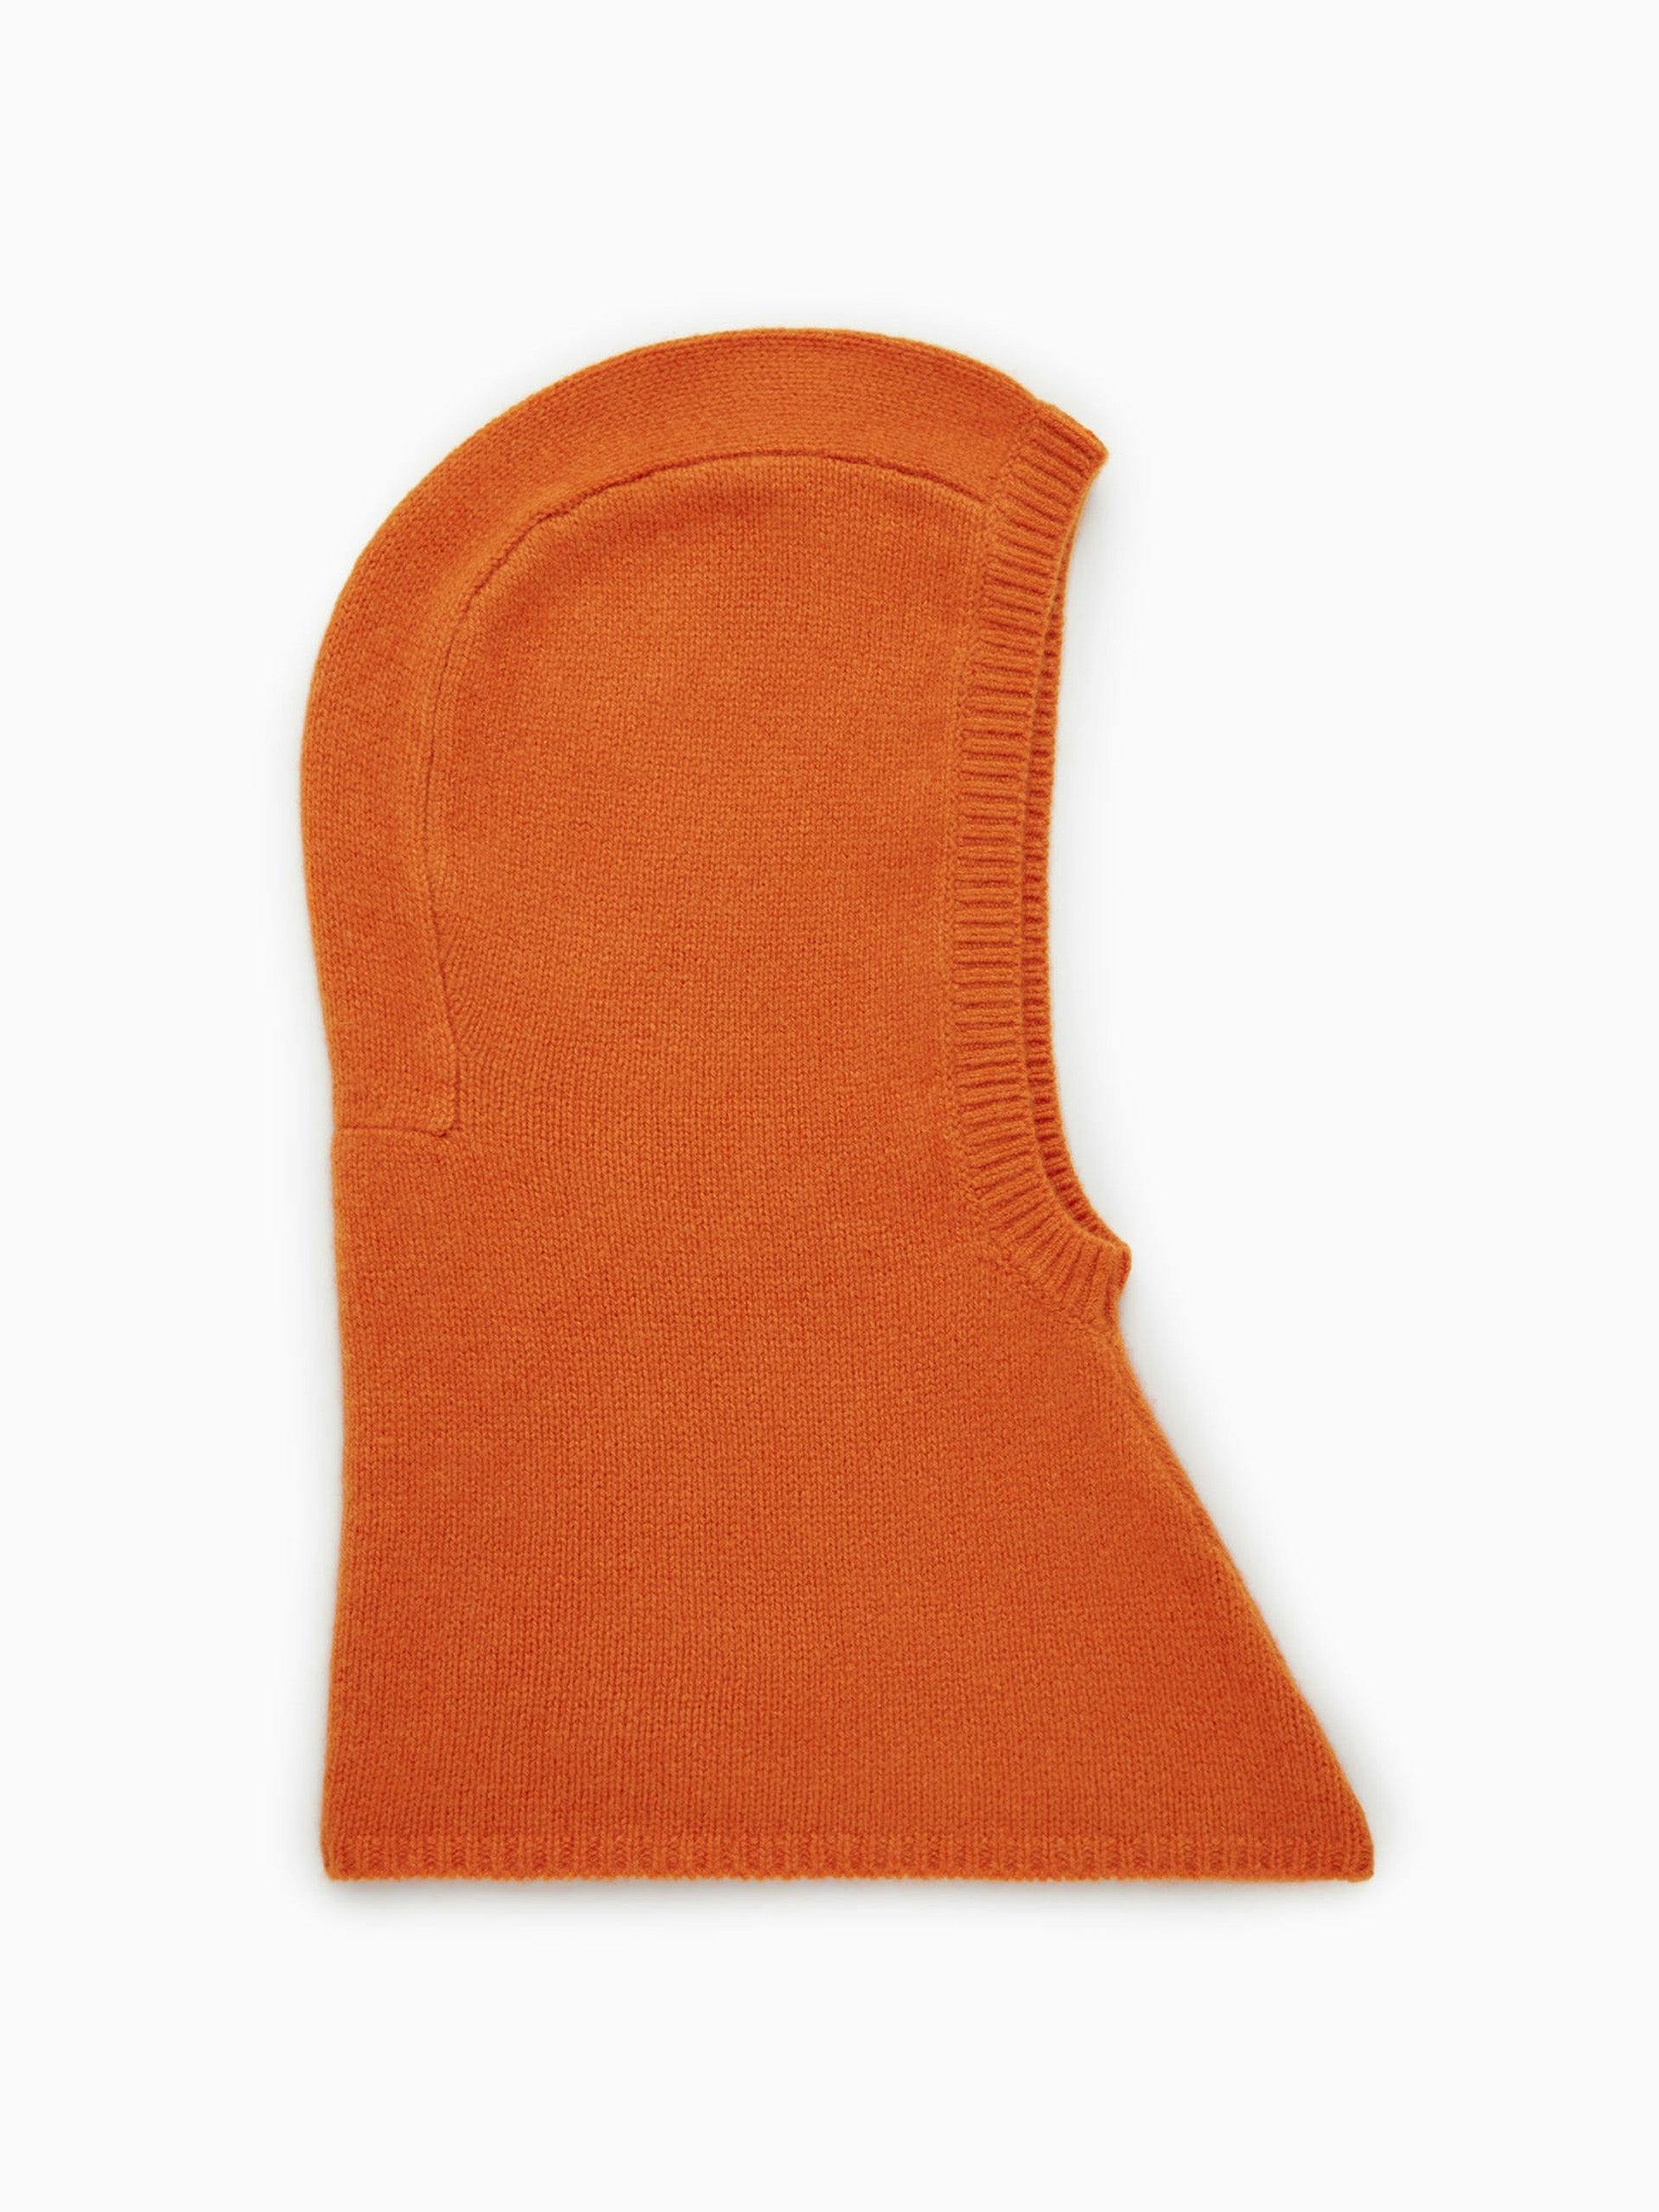 Orange cashmere balaclava